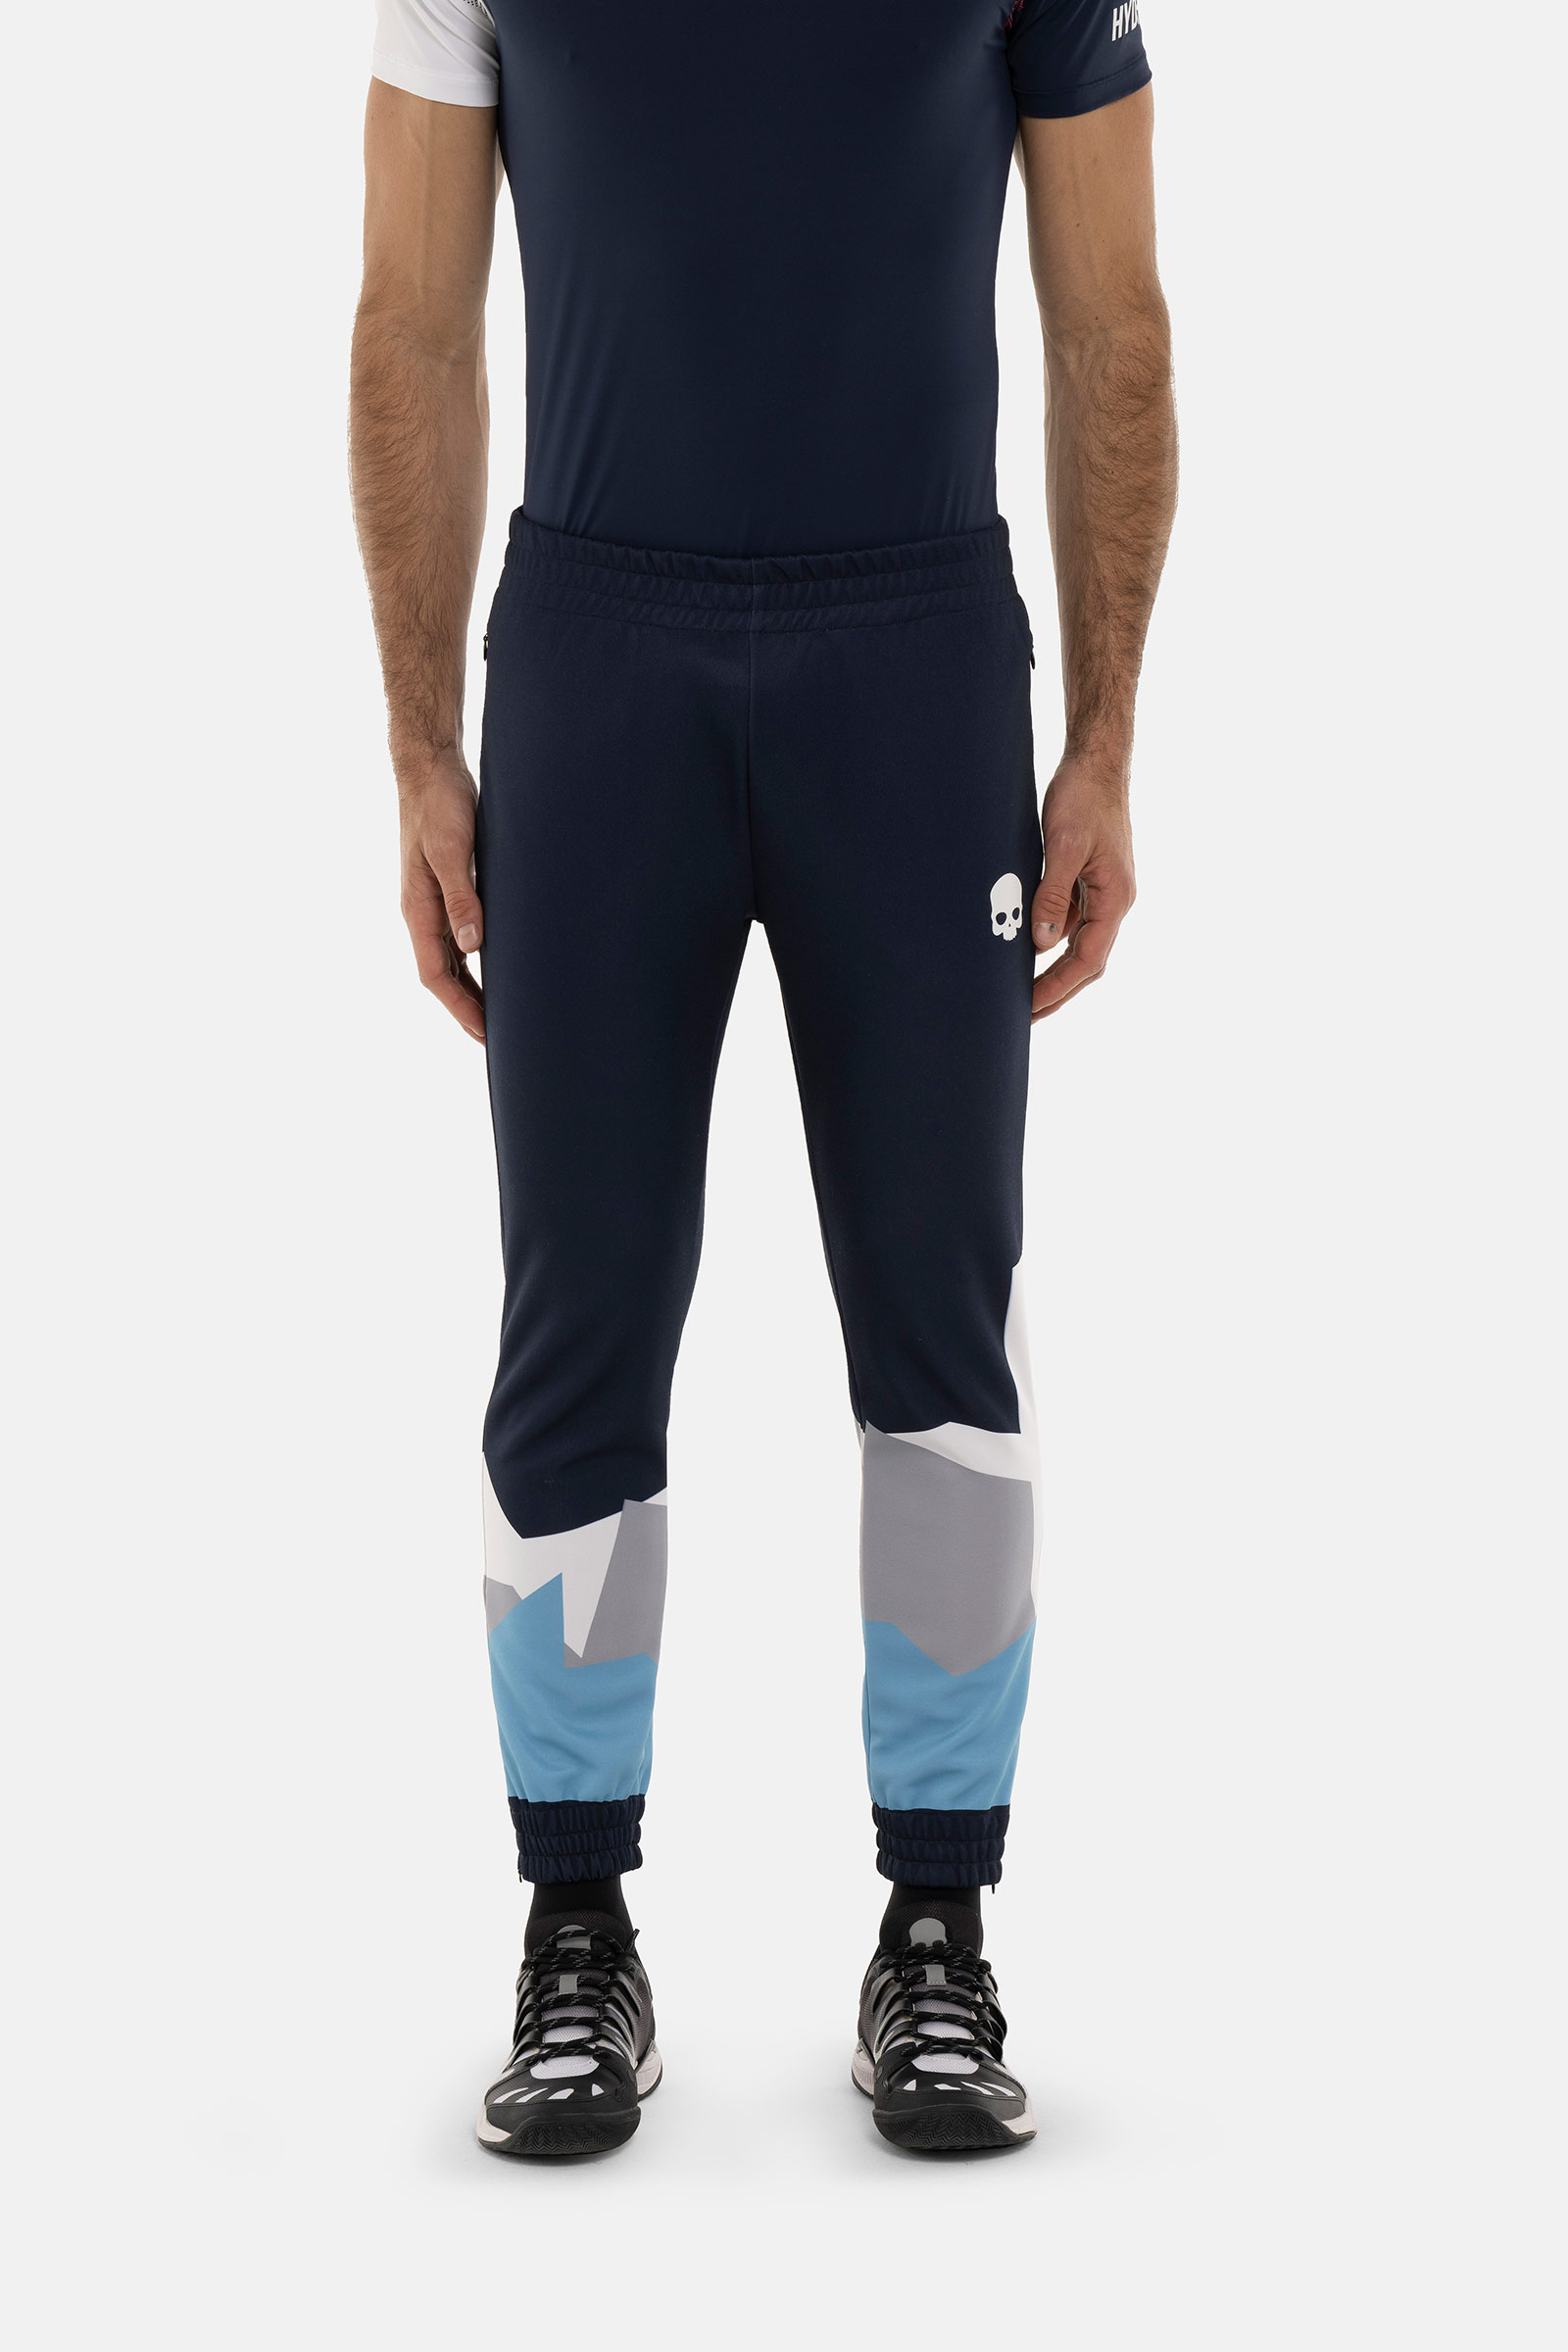 MOUNTAINS PANTS - BLUE - Hydrogen - Luxury Sportwear